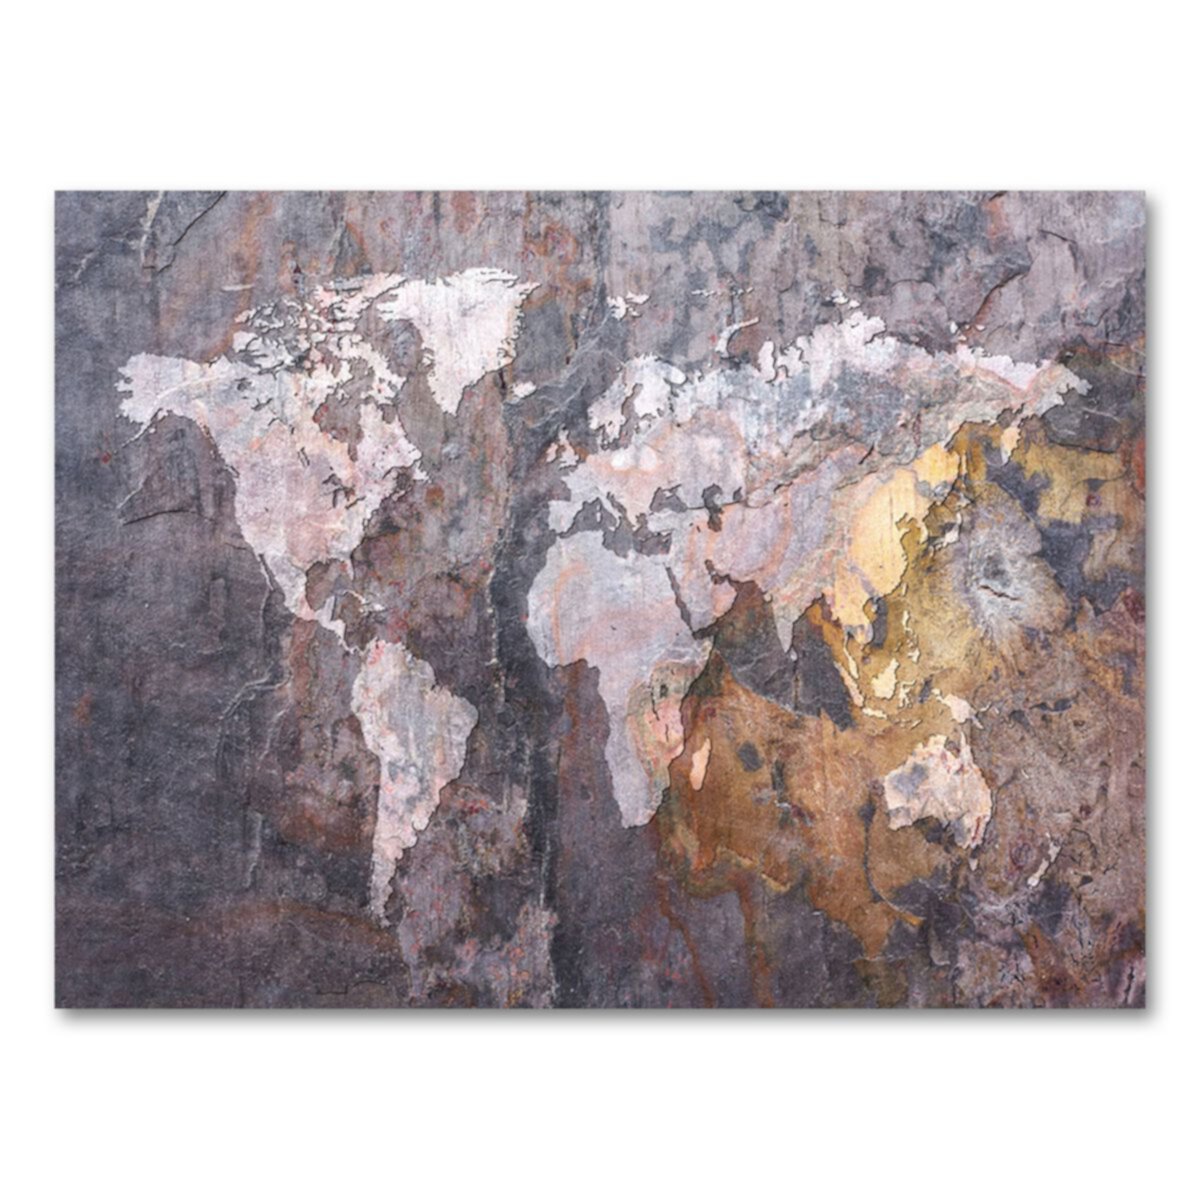 & # 34; Карта мира - Скала & # 34; 18 & # 34; х 24 & # 34; Картины на холсте от Майкла Томпсетта Trademark Fine Art